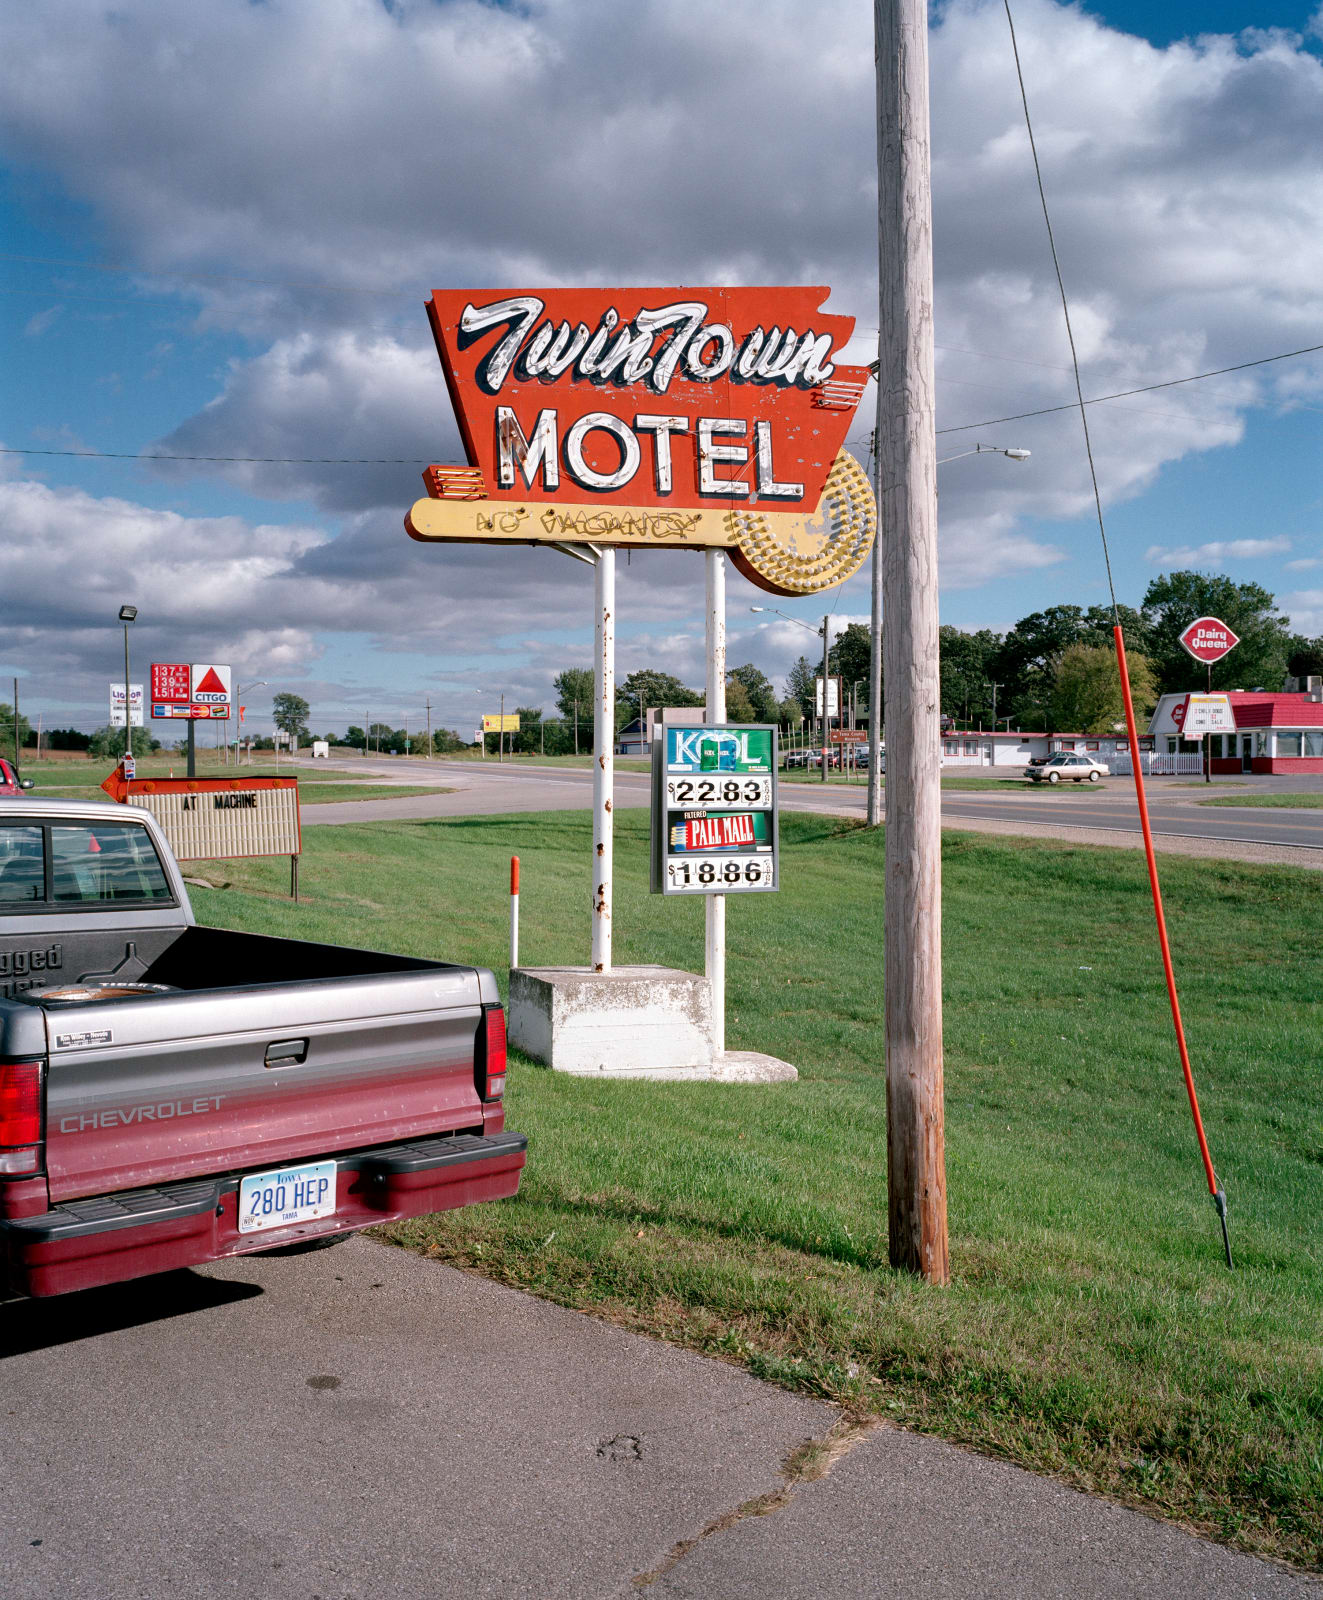 Jeff Brouws, Twintown Motel, Iowa, 2006